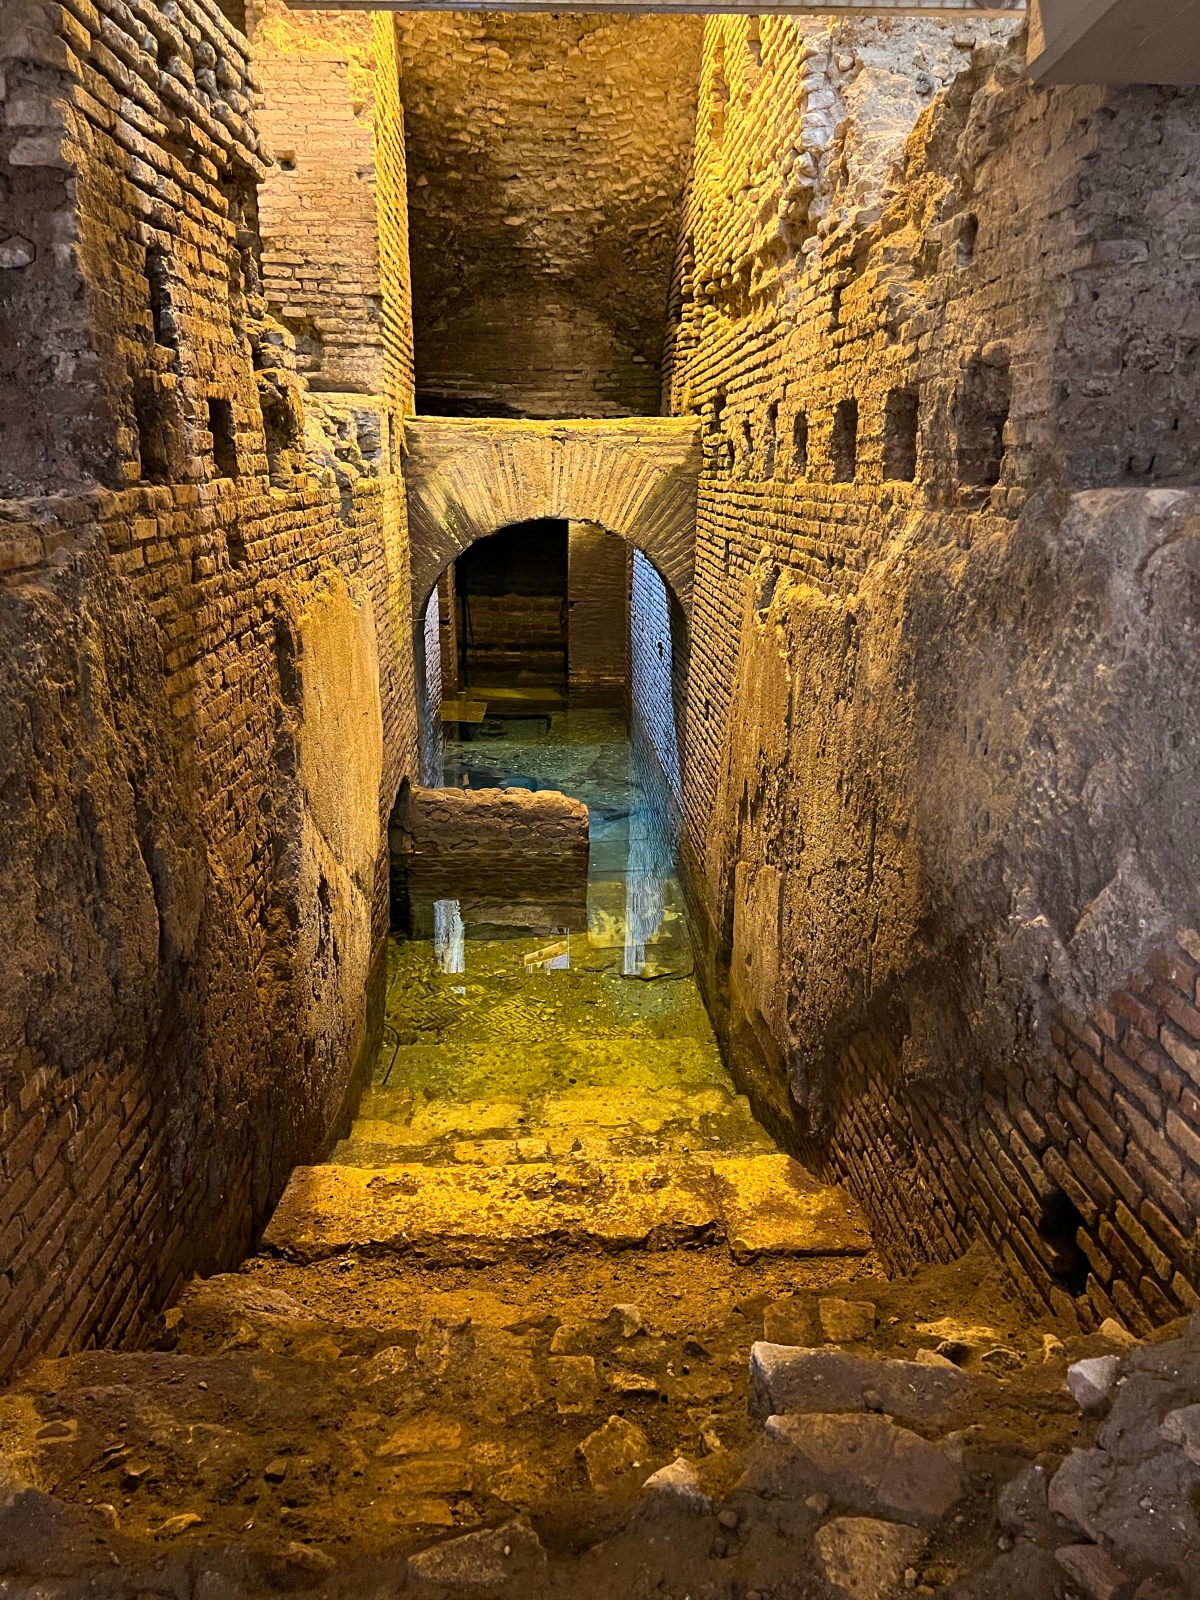 Vicus Caprarius Archaeological Site, Rome, Italy